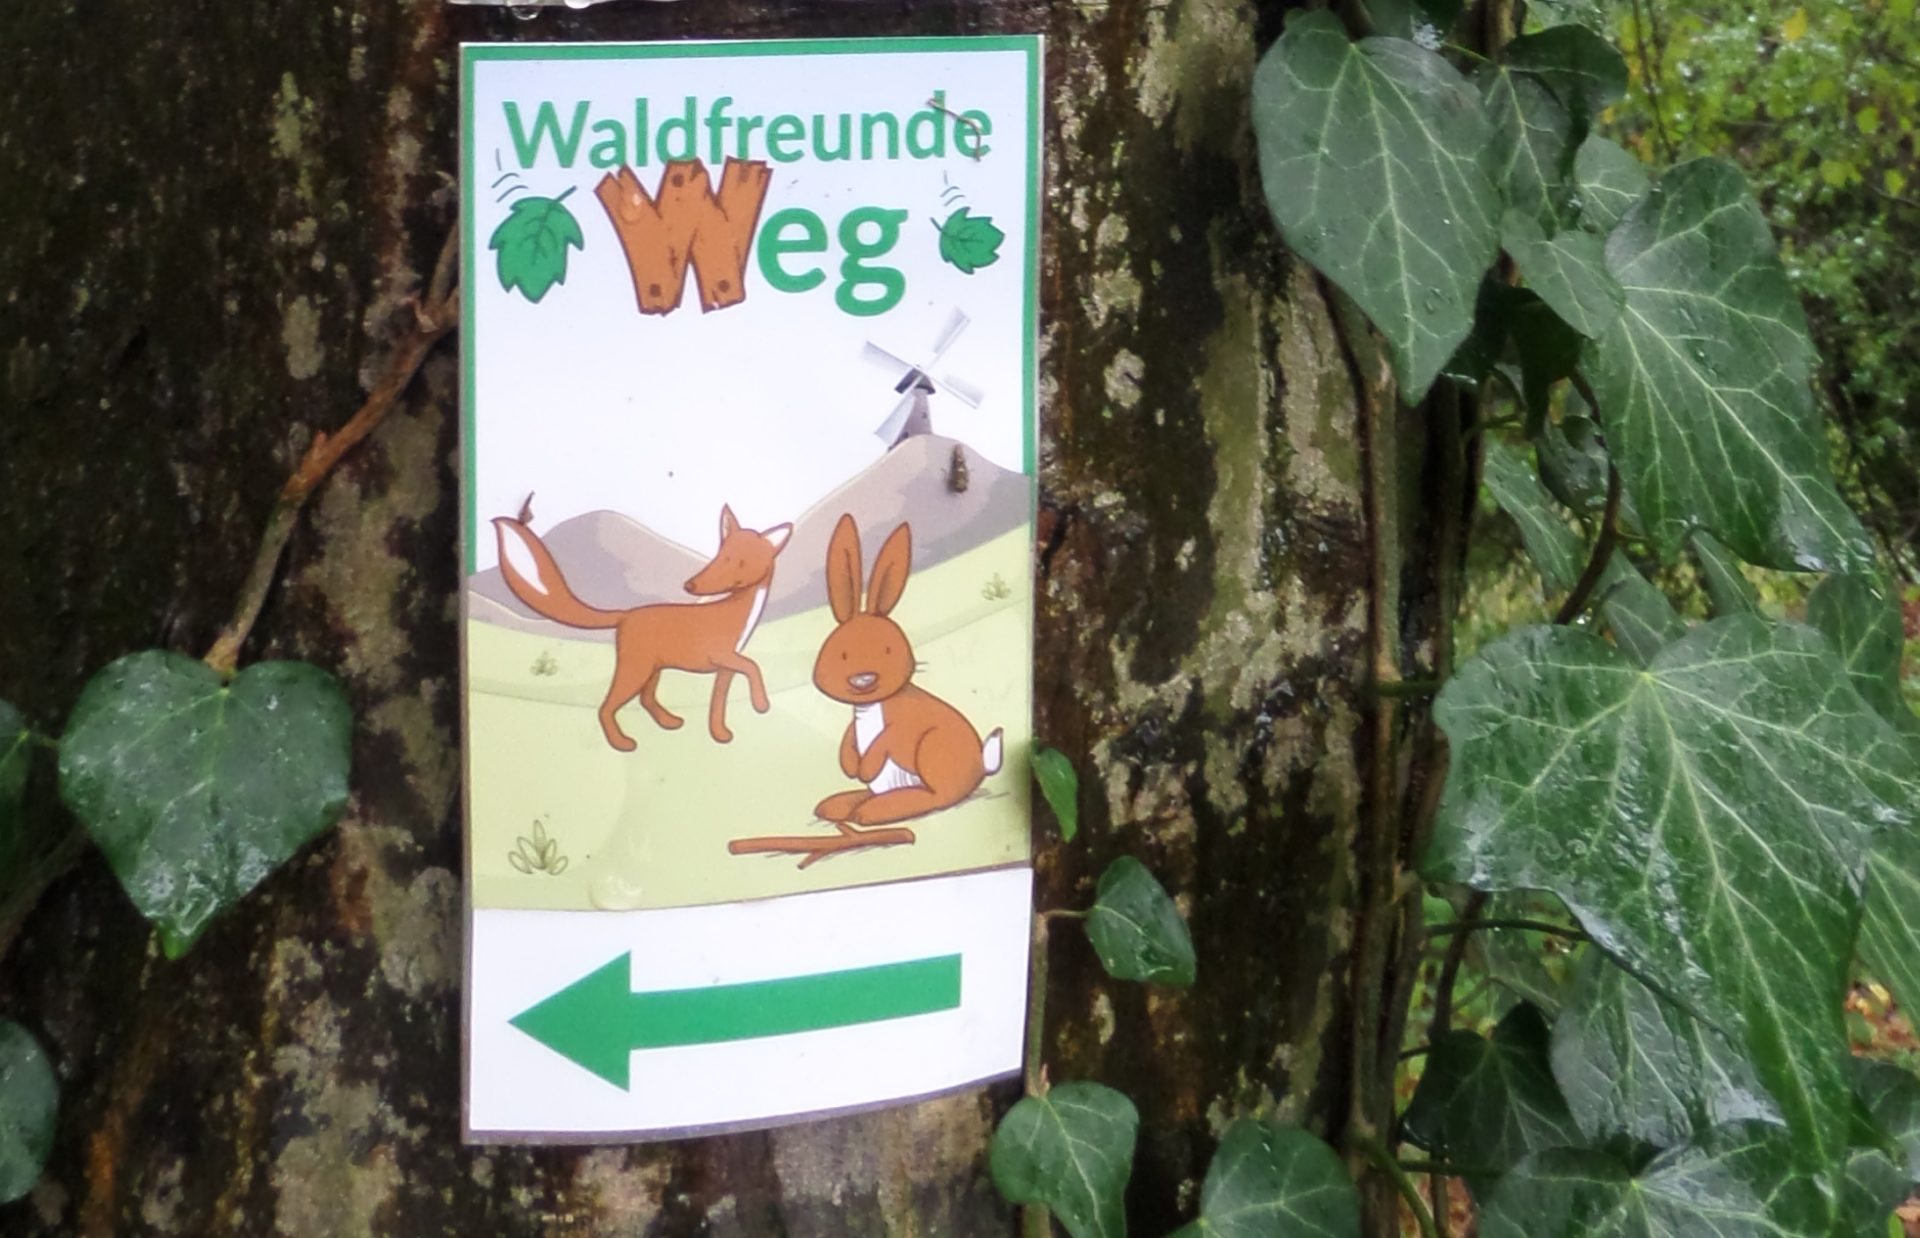 Schil und Wegweiser "Waldfreunde Weg" am Baum.